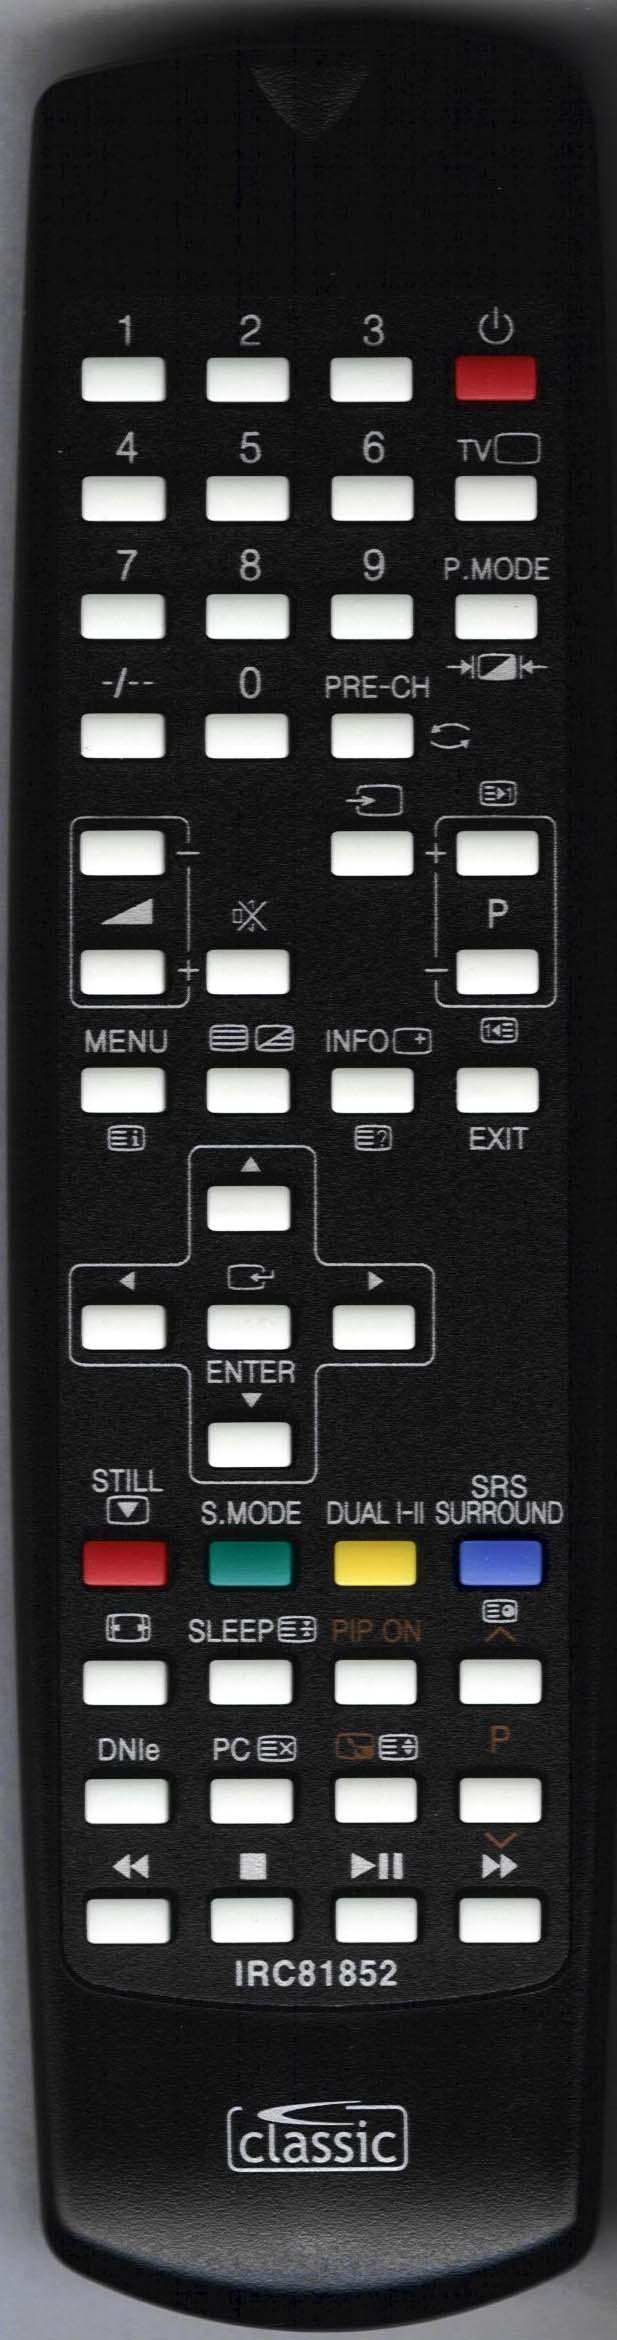 Samsung LS32A33WX Remote Control